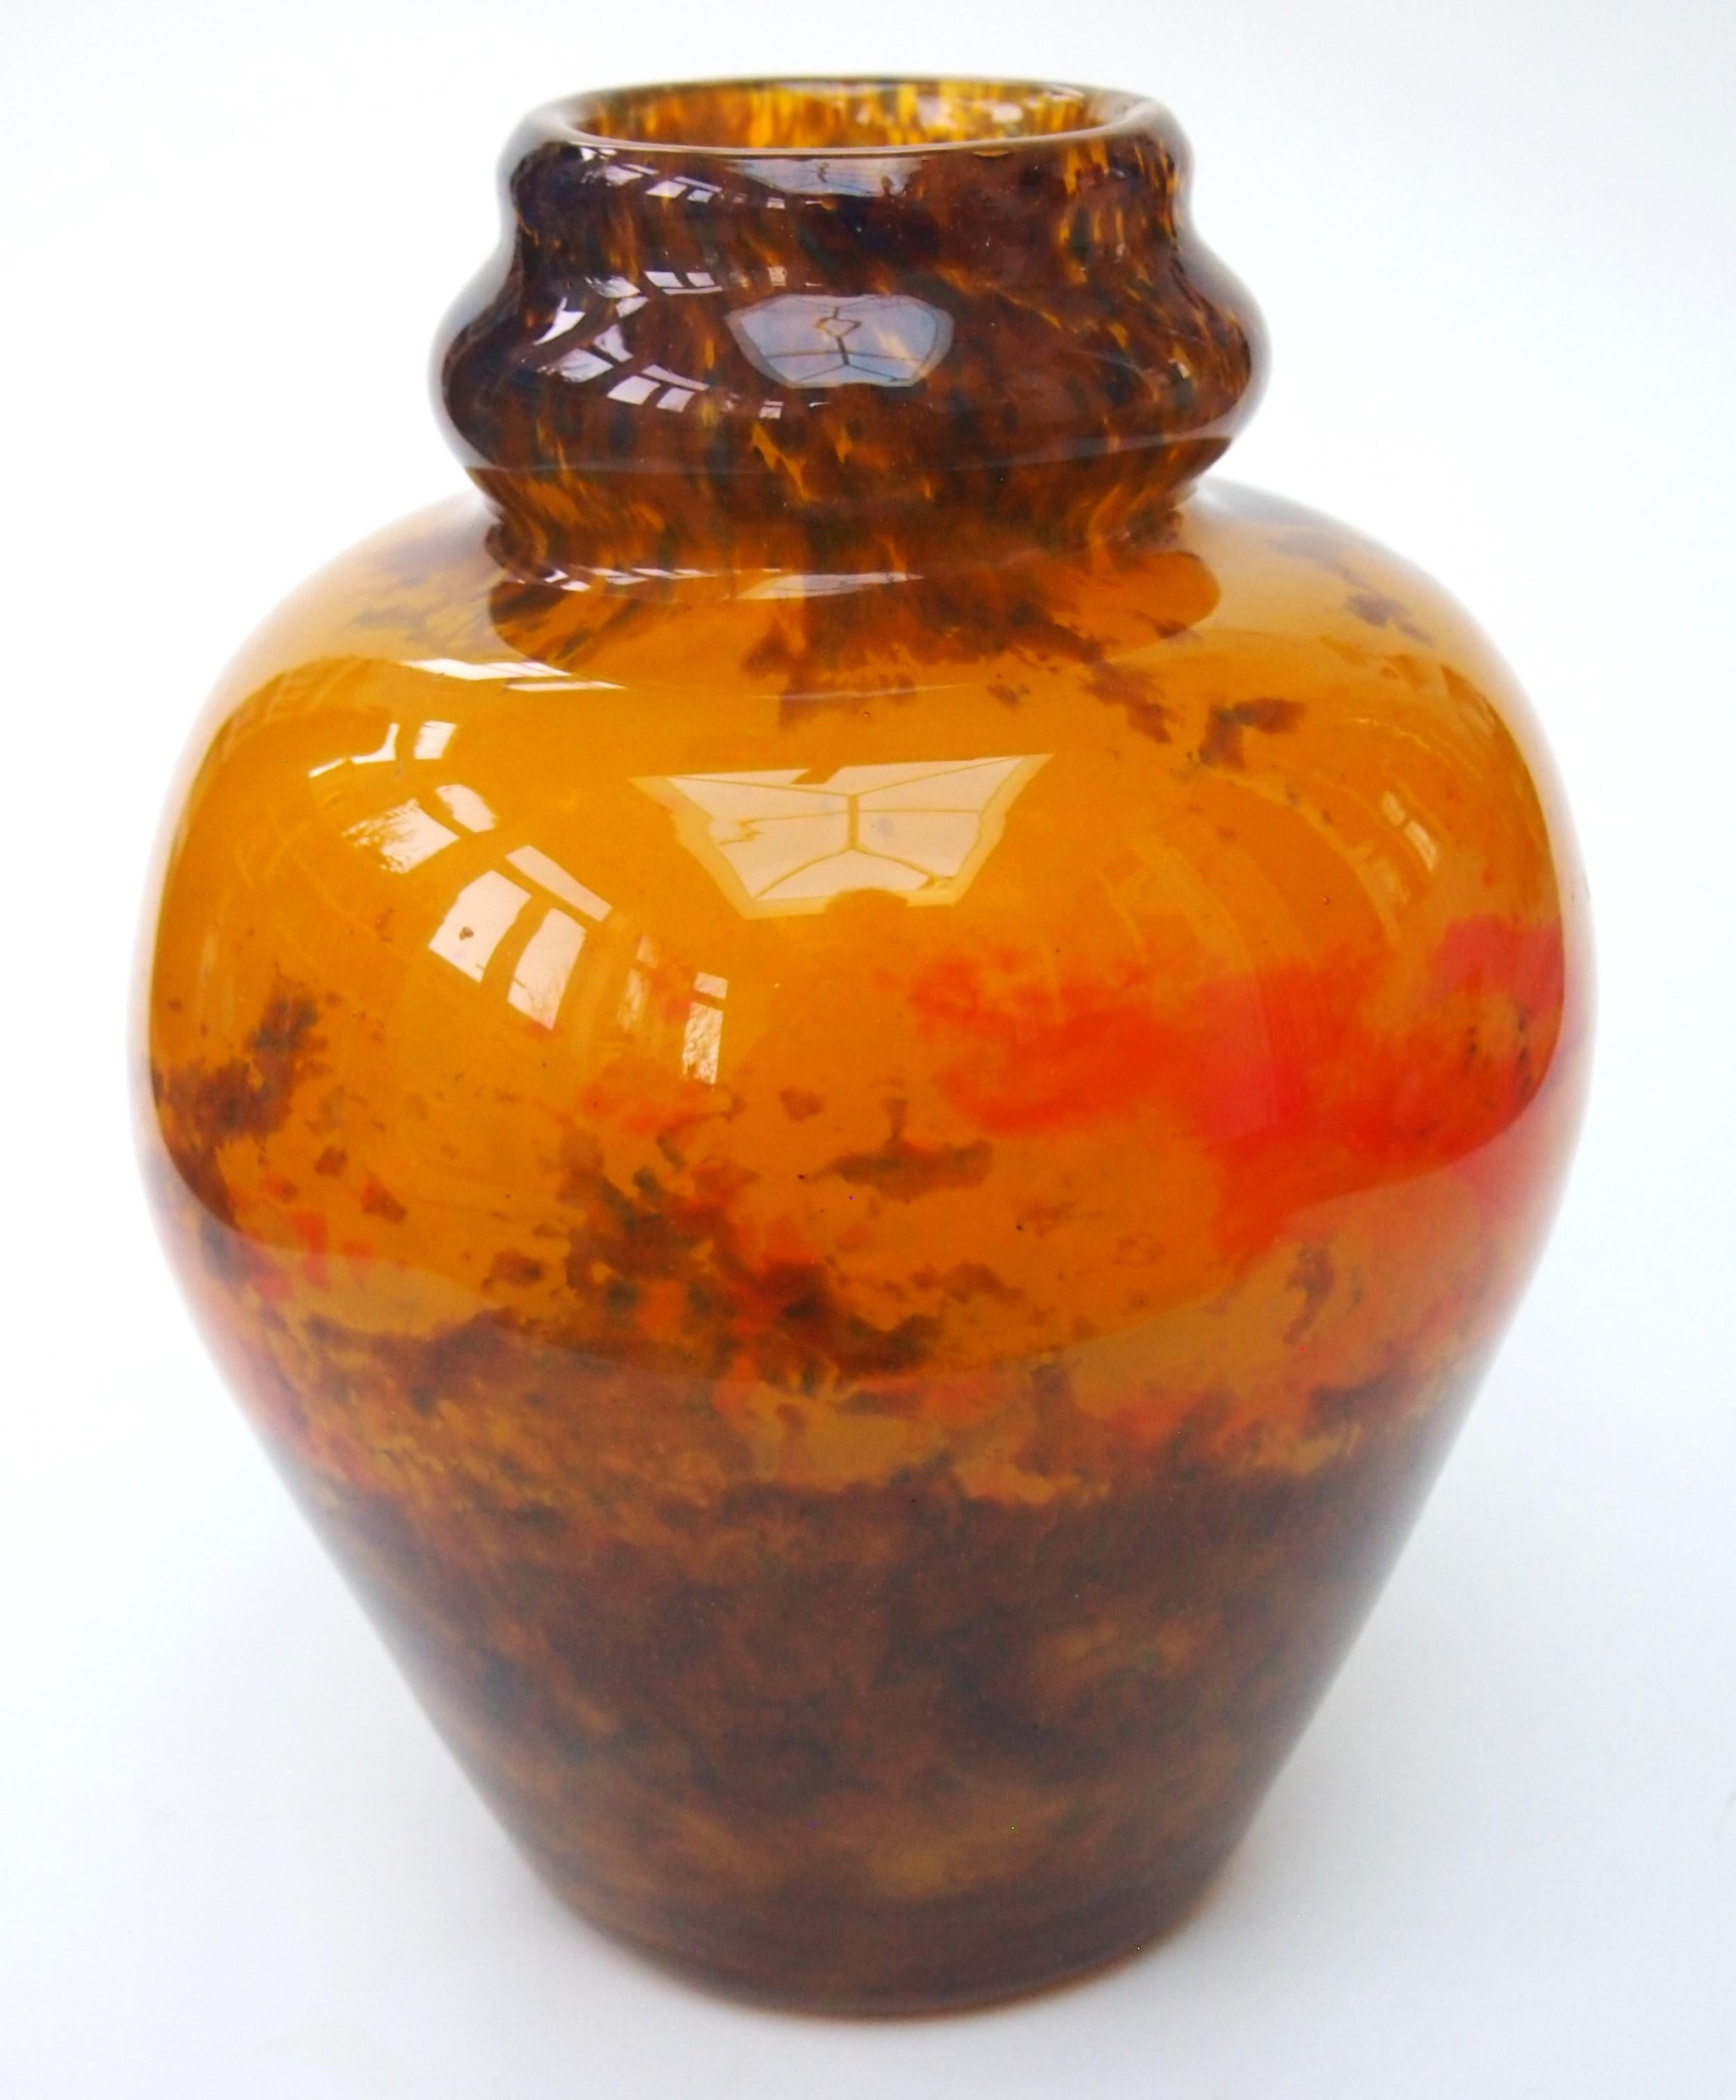 Auffällige und sehr schöne große polychrome 'Jades'-Vase von Muller Freres - hochgradig feuerpoliert und mit zufälligen Flecken in Gelb, Rot und Braun. Die Vase ist eine vereinfachte Doppelkürbisform. Es ist vollständig signiert 'Muller Frères